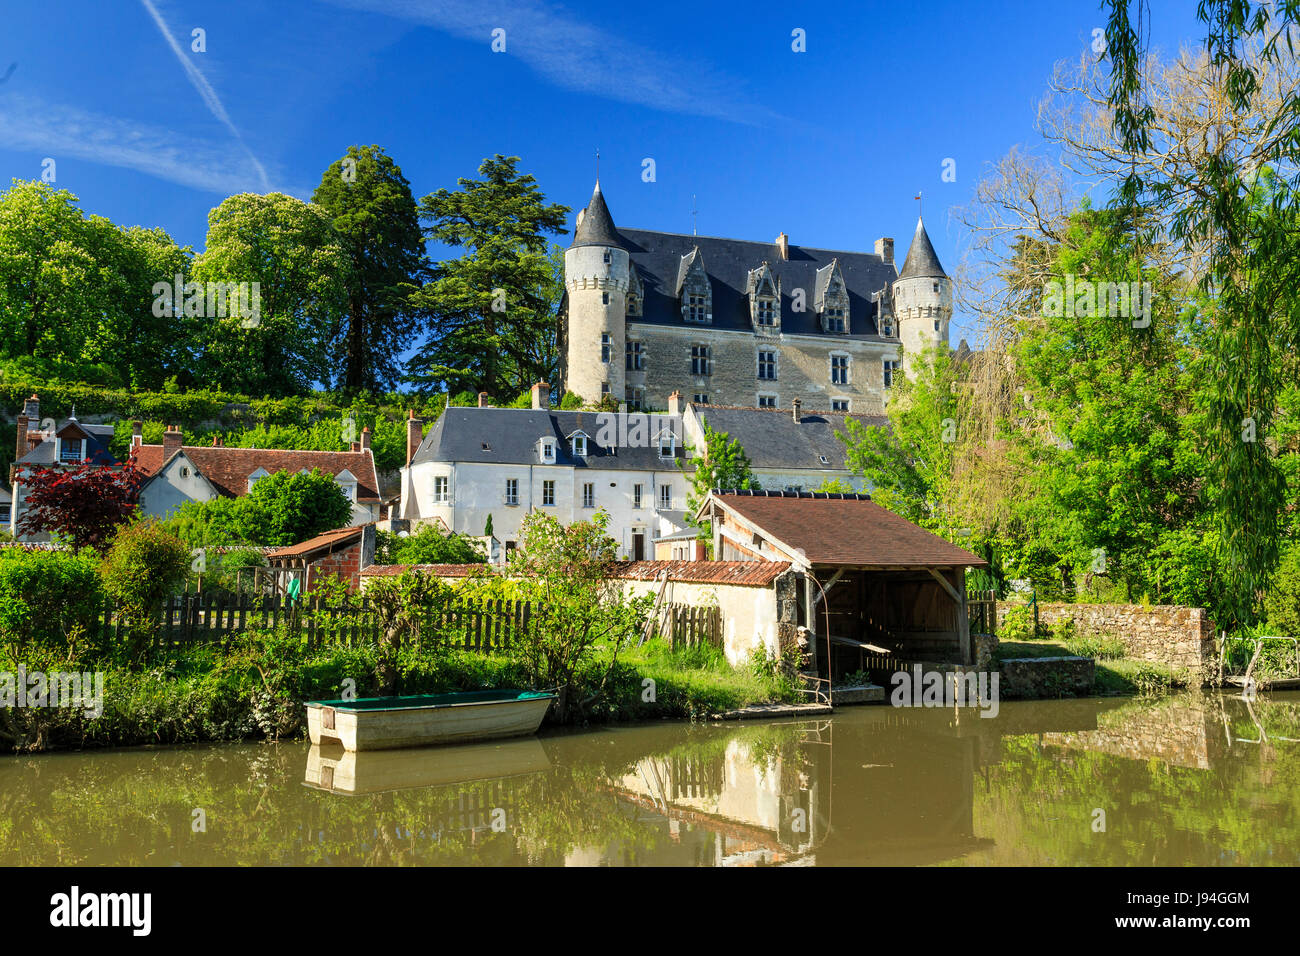 Indre y Loira, Montresor, etiquetados Les Plus Beaux Villages de Francia (los pueblos más bellos de Francia), casas y el castillo a lo largo del río Indrois Foto de stock